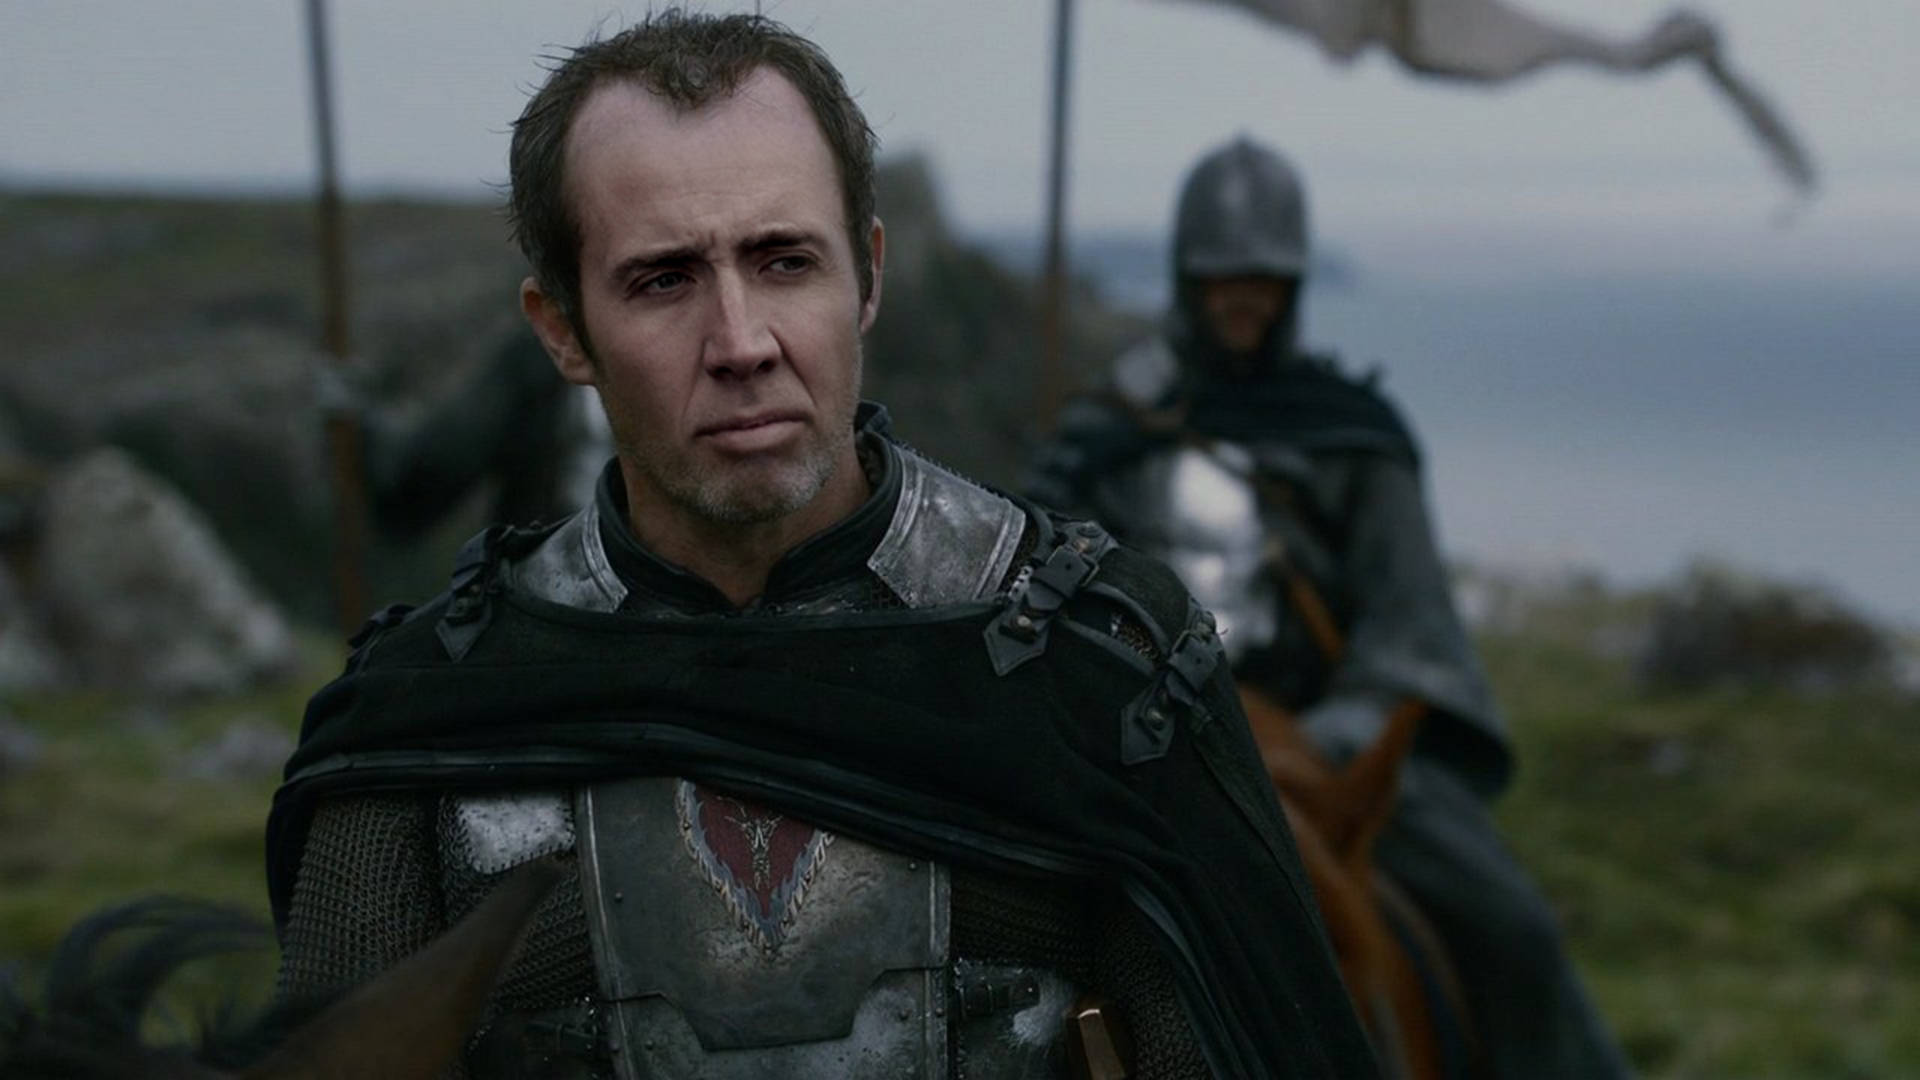 Nicolas Cage Meme Stannis Baratheon Background